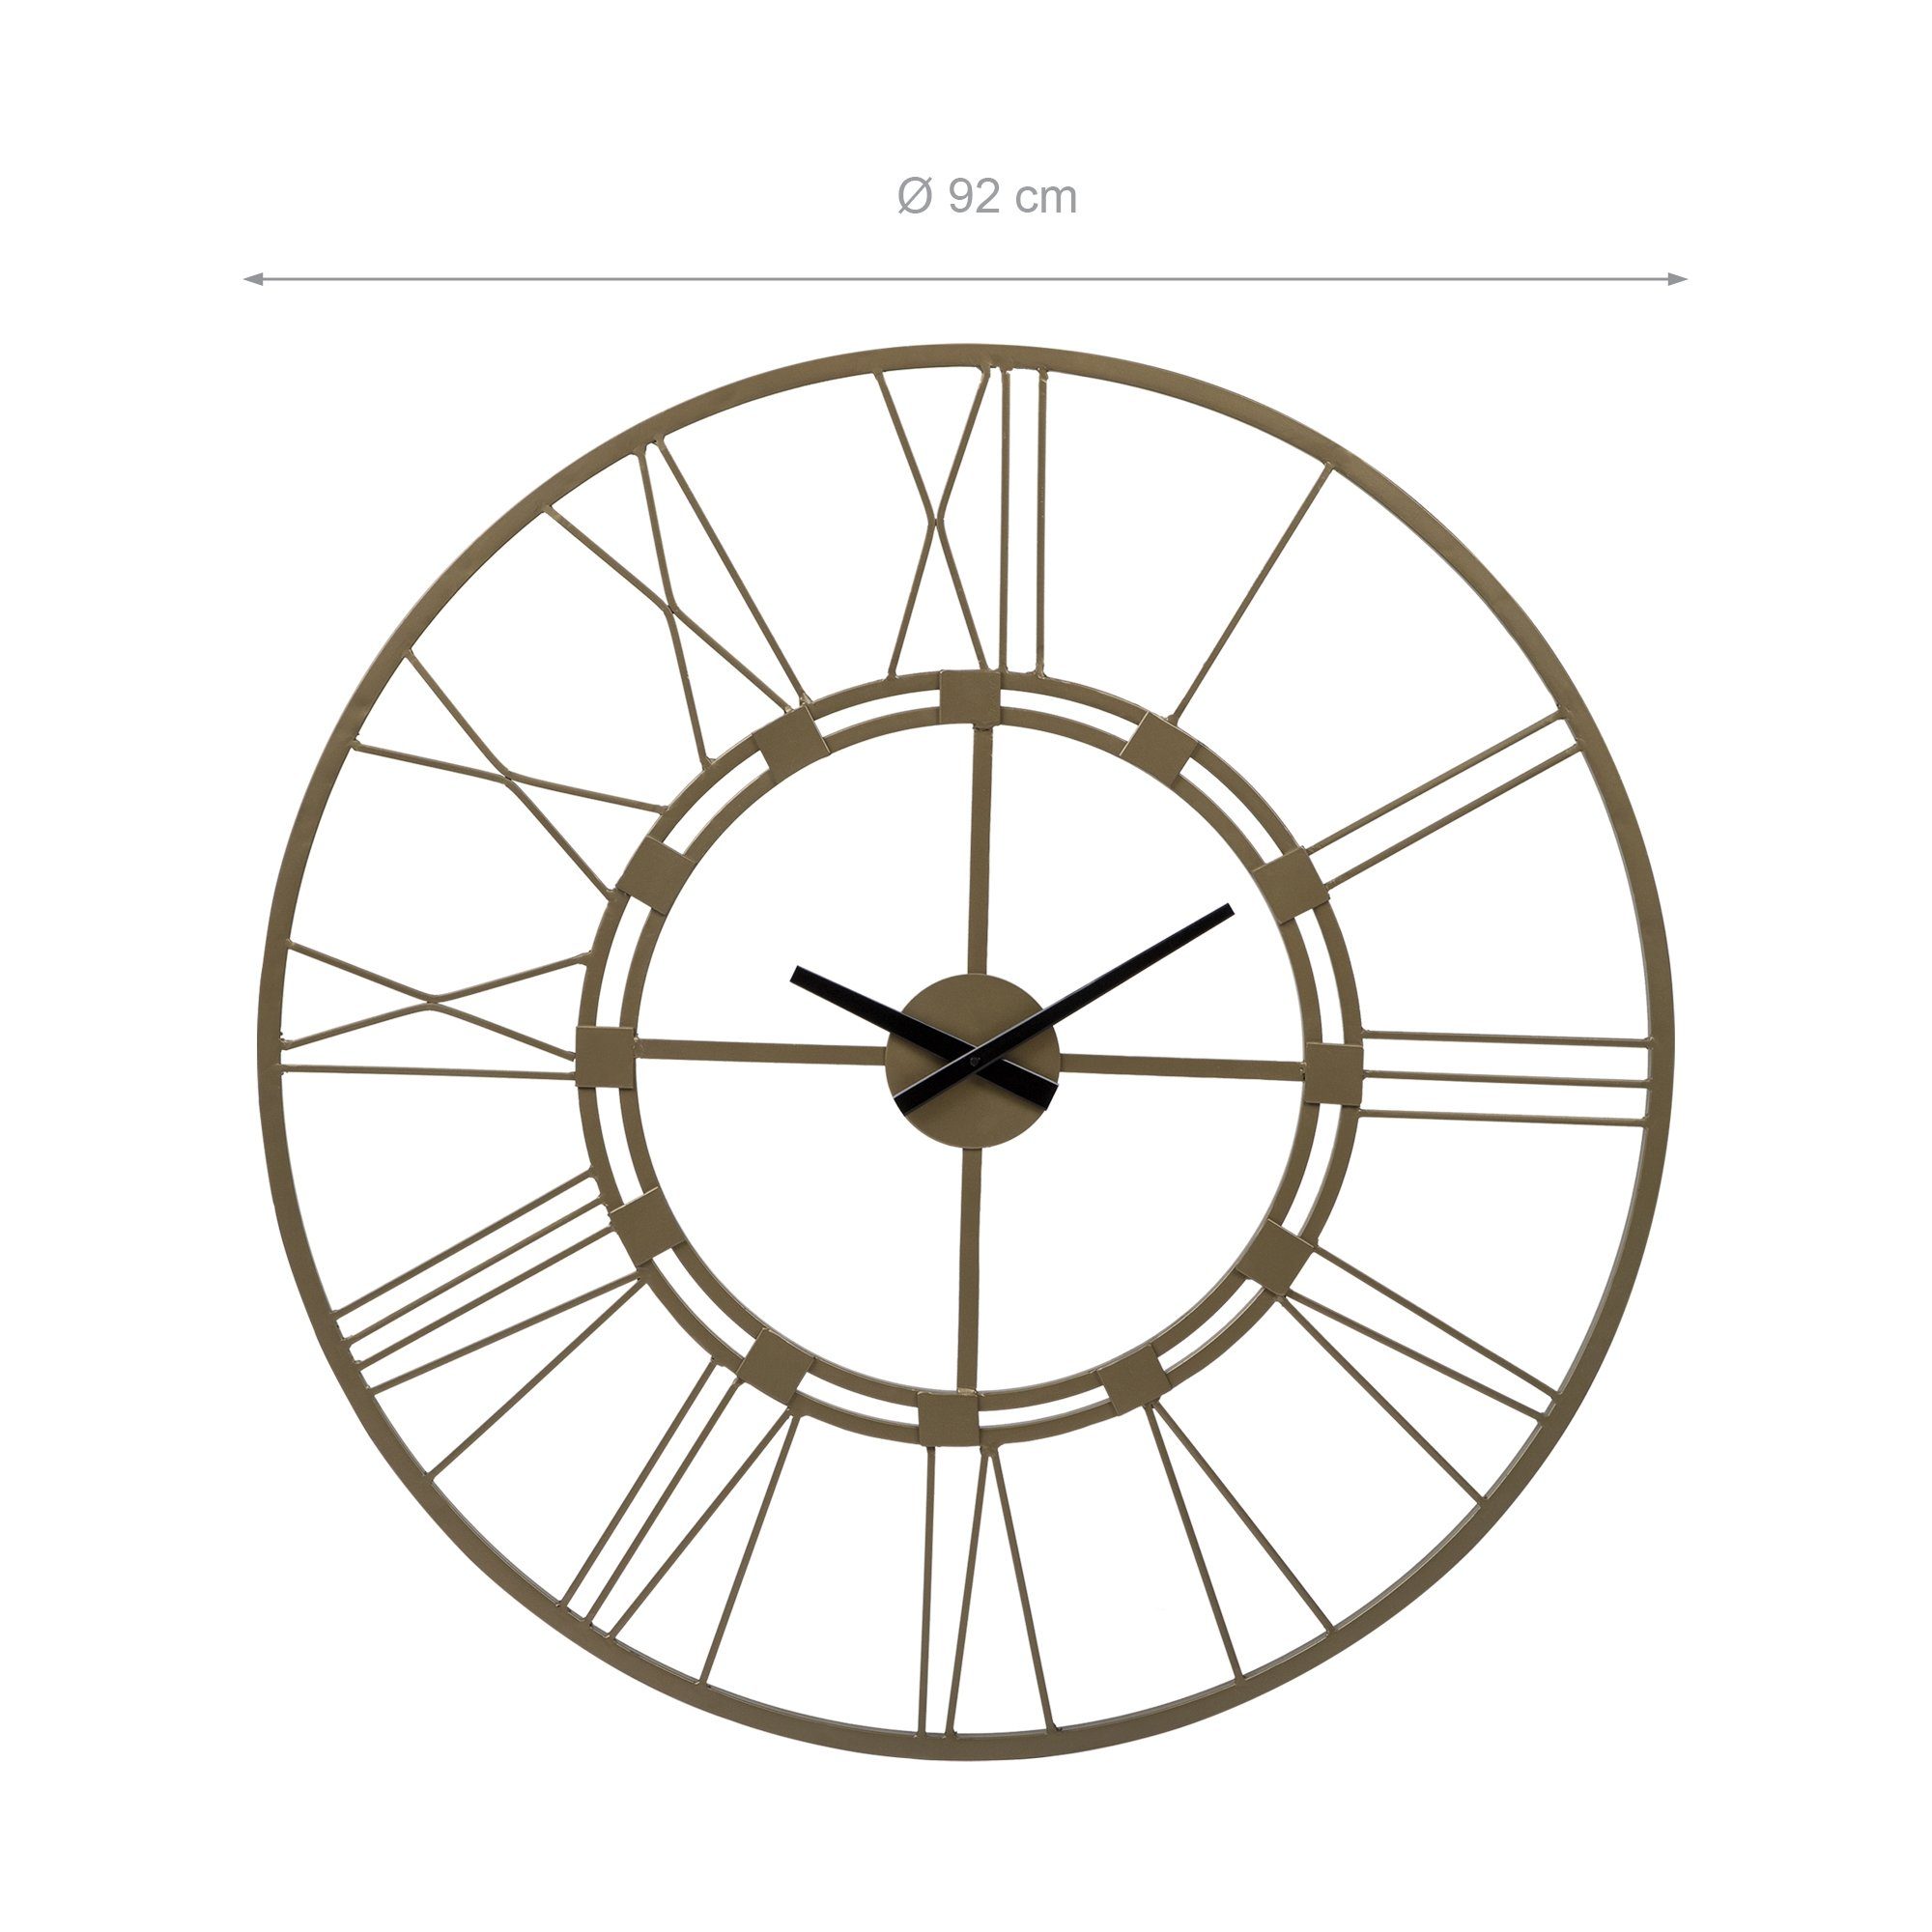 Unikat Uhr Dekorative Dekouhr (Altgold Vintage-Stil) Wanduhr Stockholm im Eisen Ø85cm WOMO-DESIGN rund handgefertigt Design Uhr